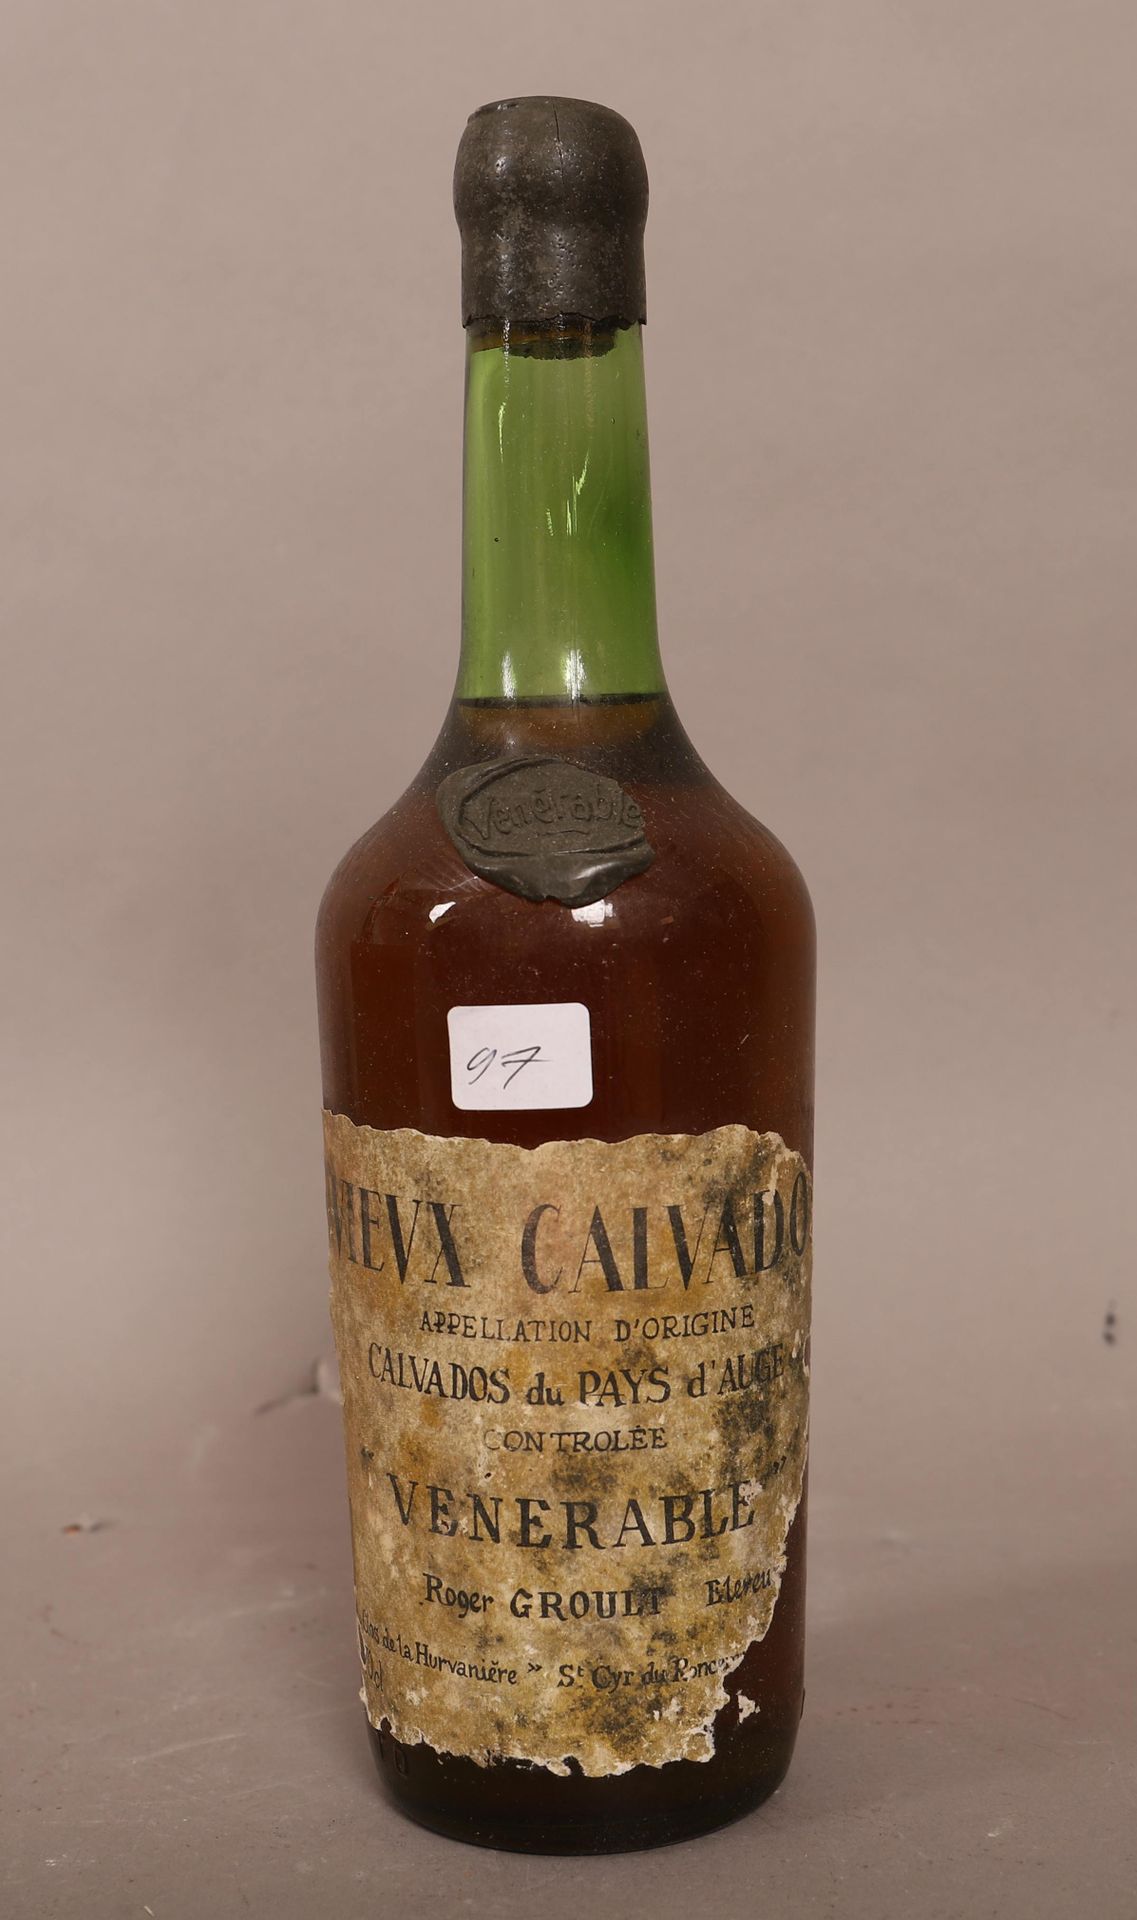 Null Old Calvados (x1)

Venerable

Pays d'Auge

0,70L